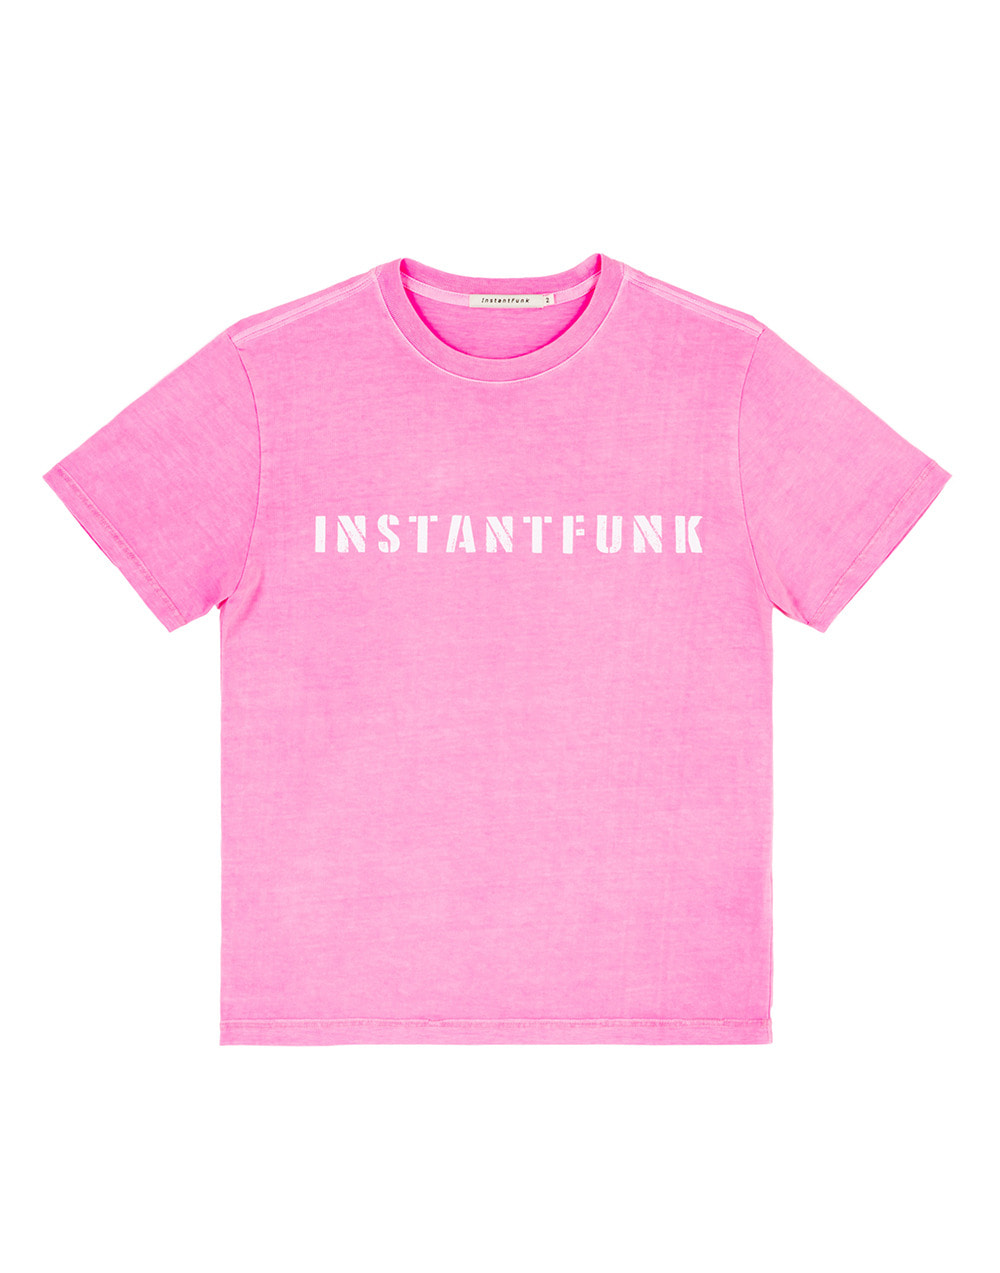 피그먼트다잉 티셔츠 - 핑크